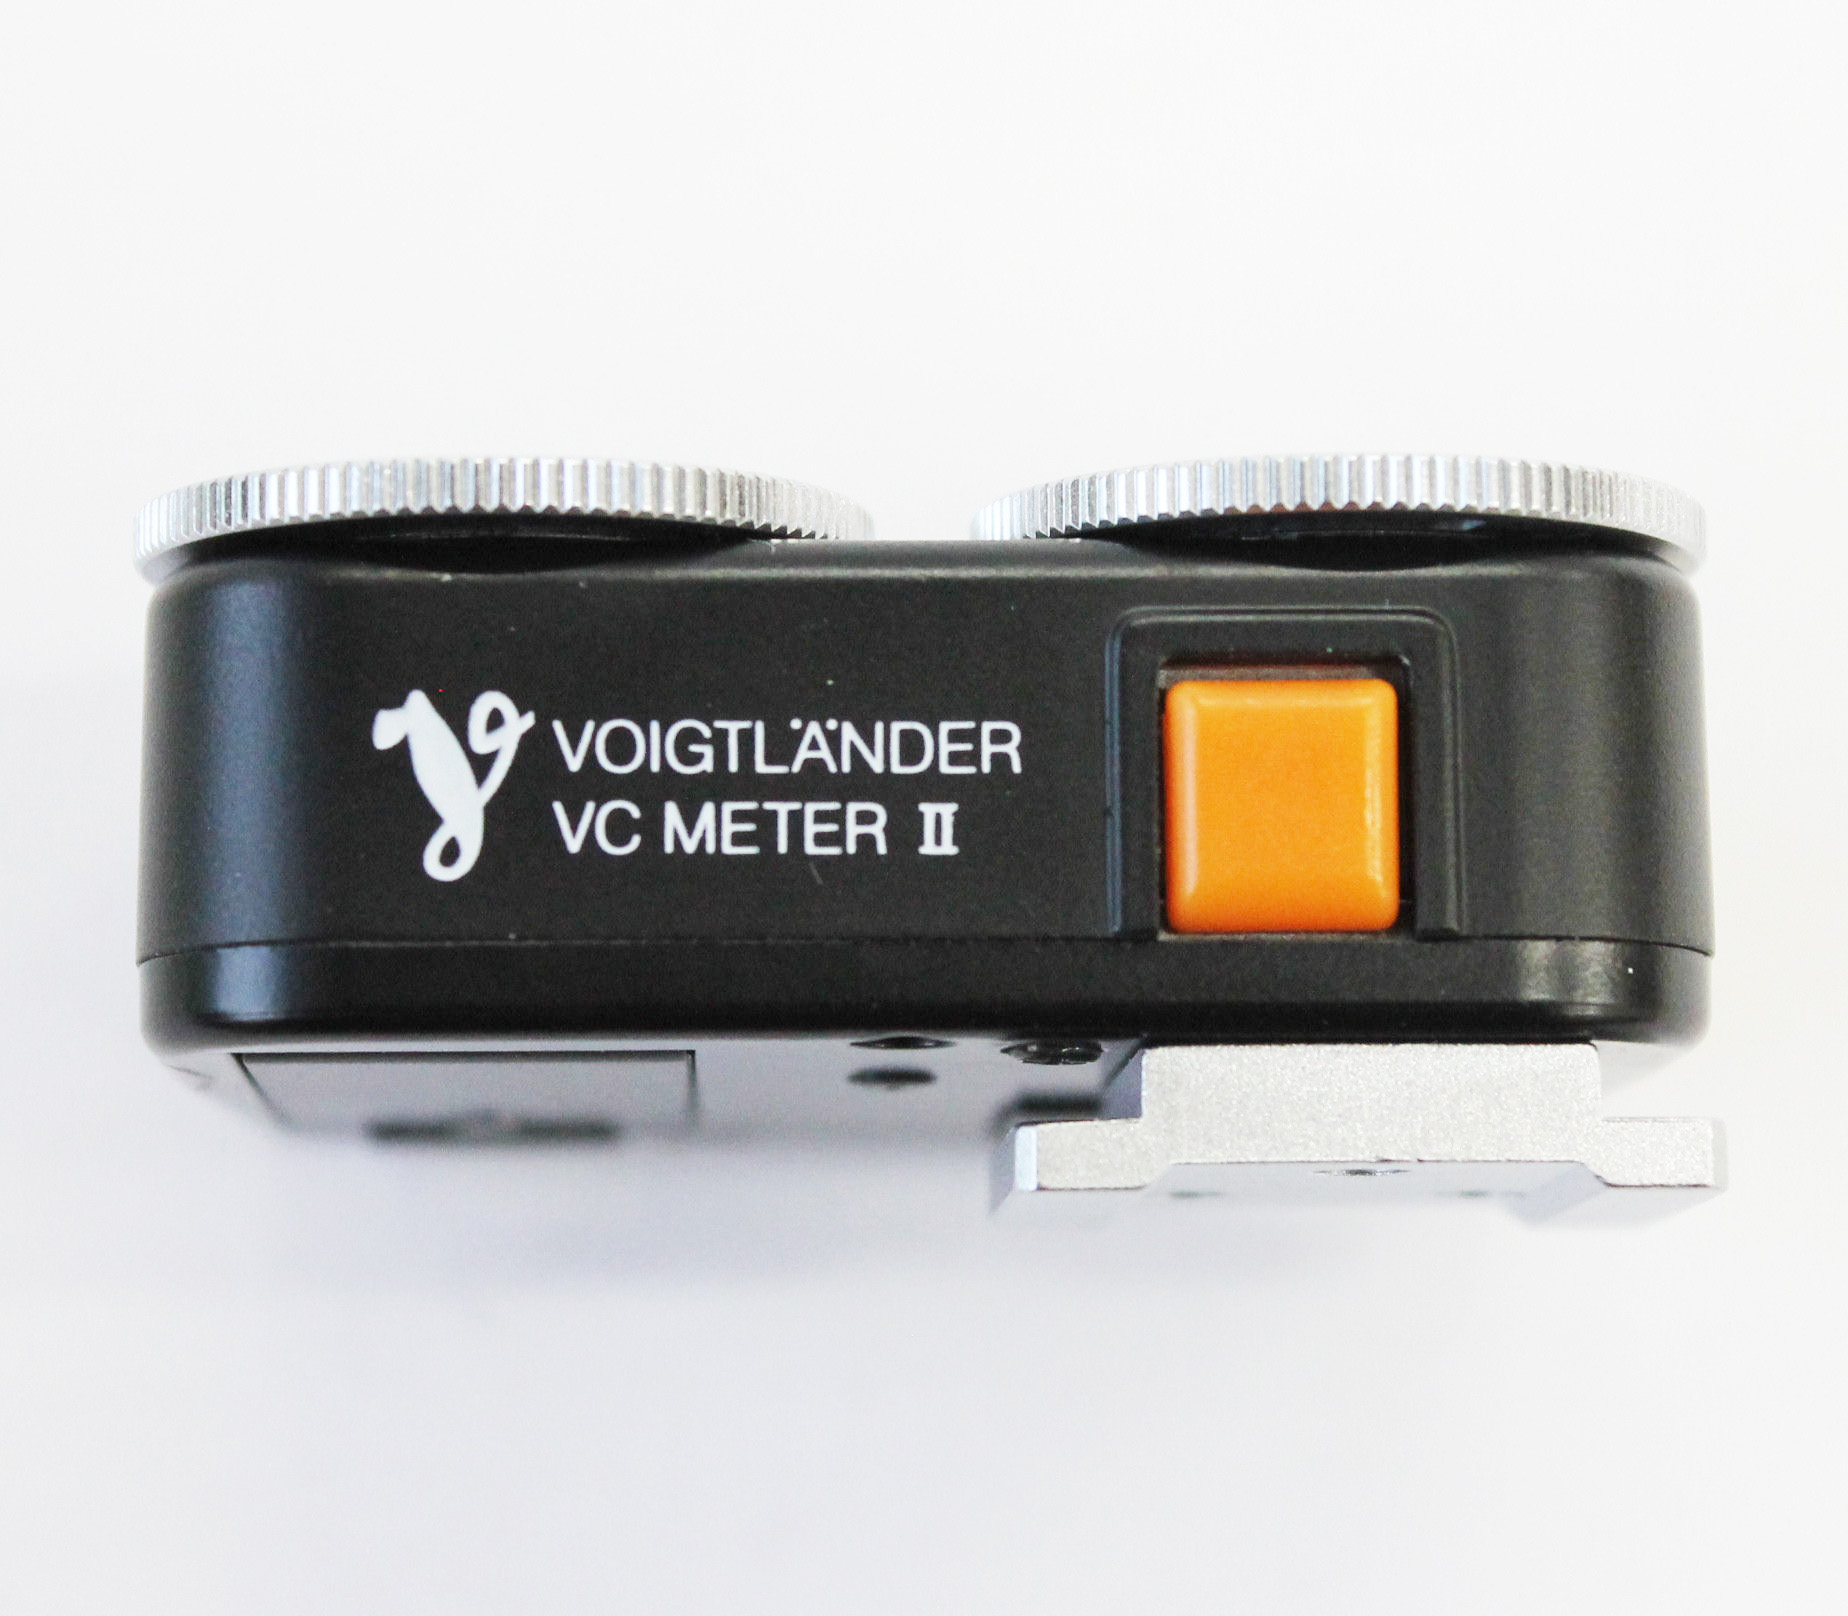  Voigtlander VC Meter II Light Meter Black from Japan Photo 2